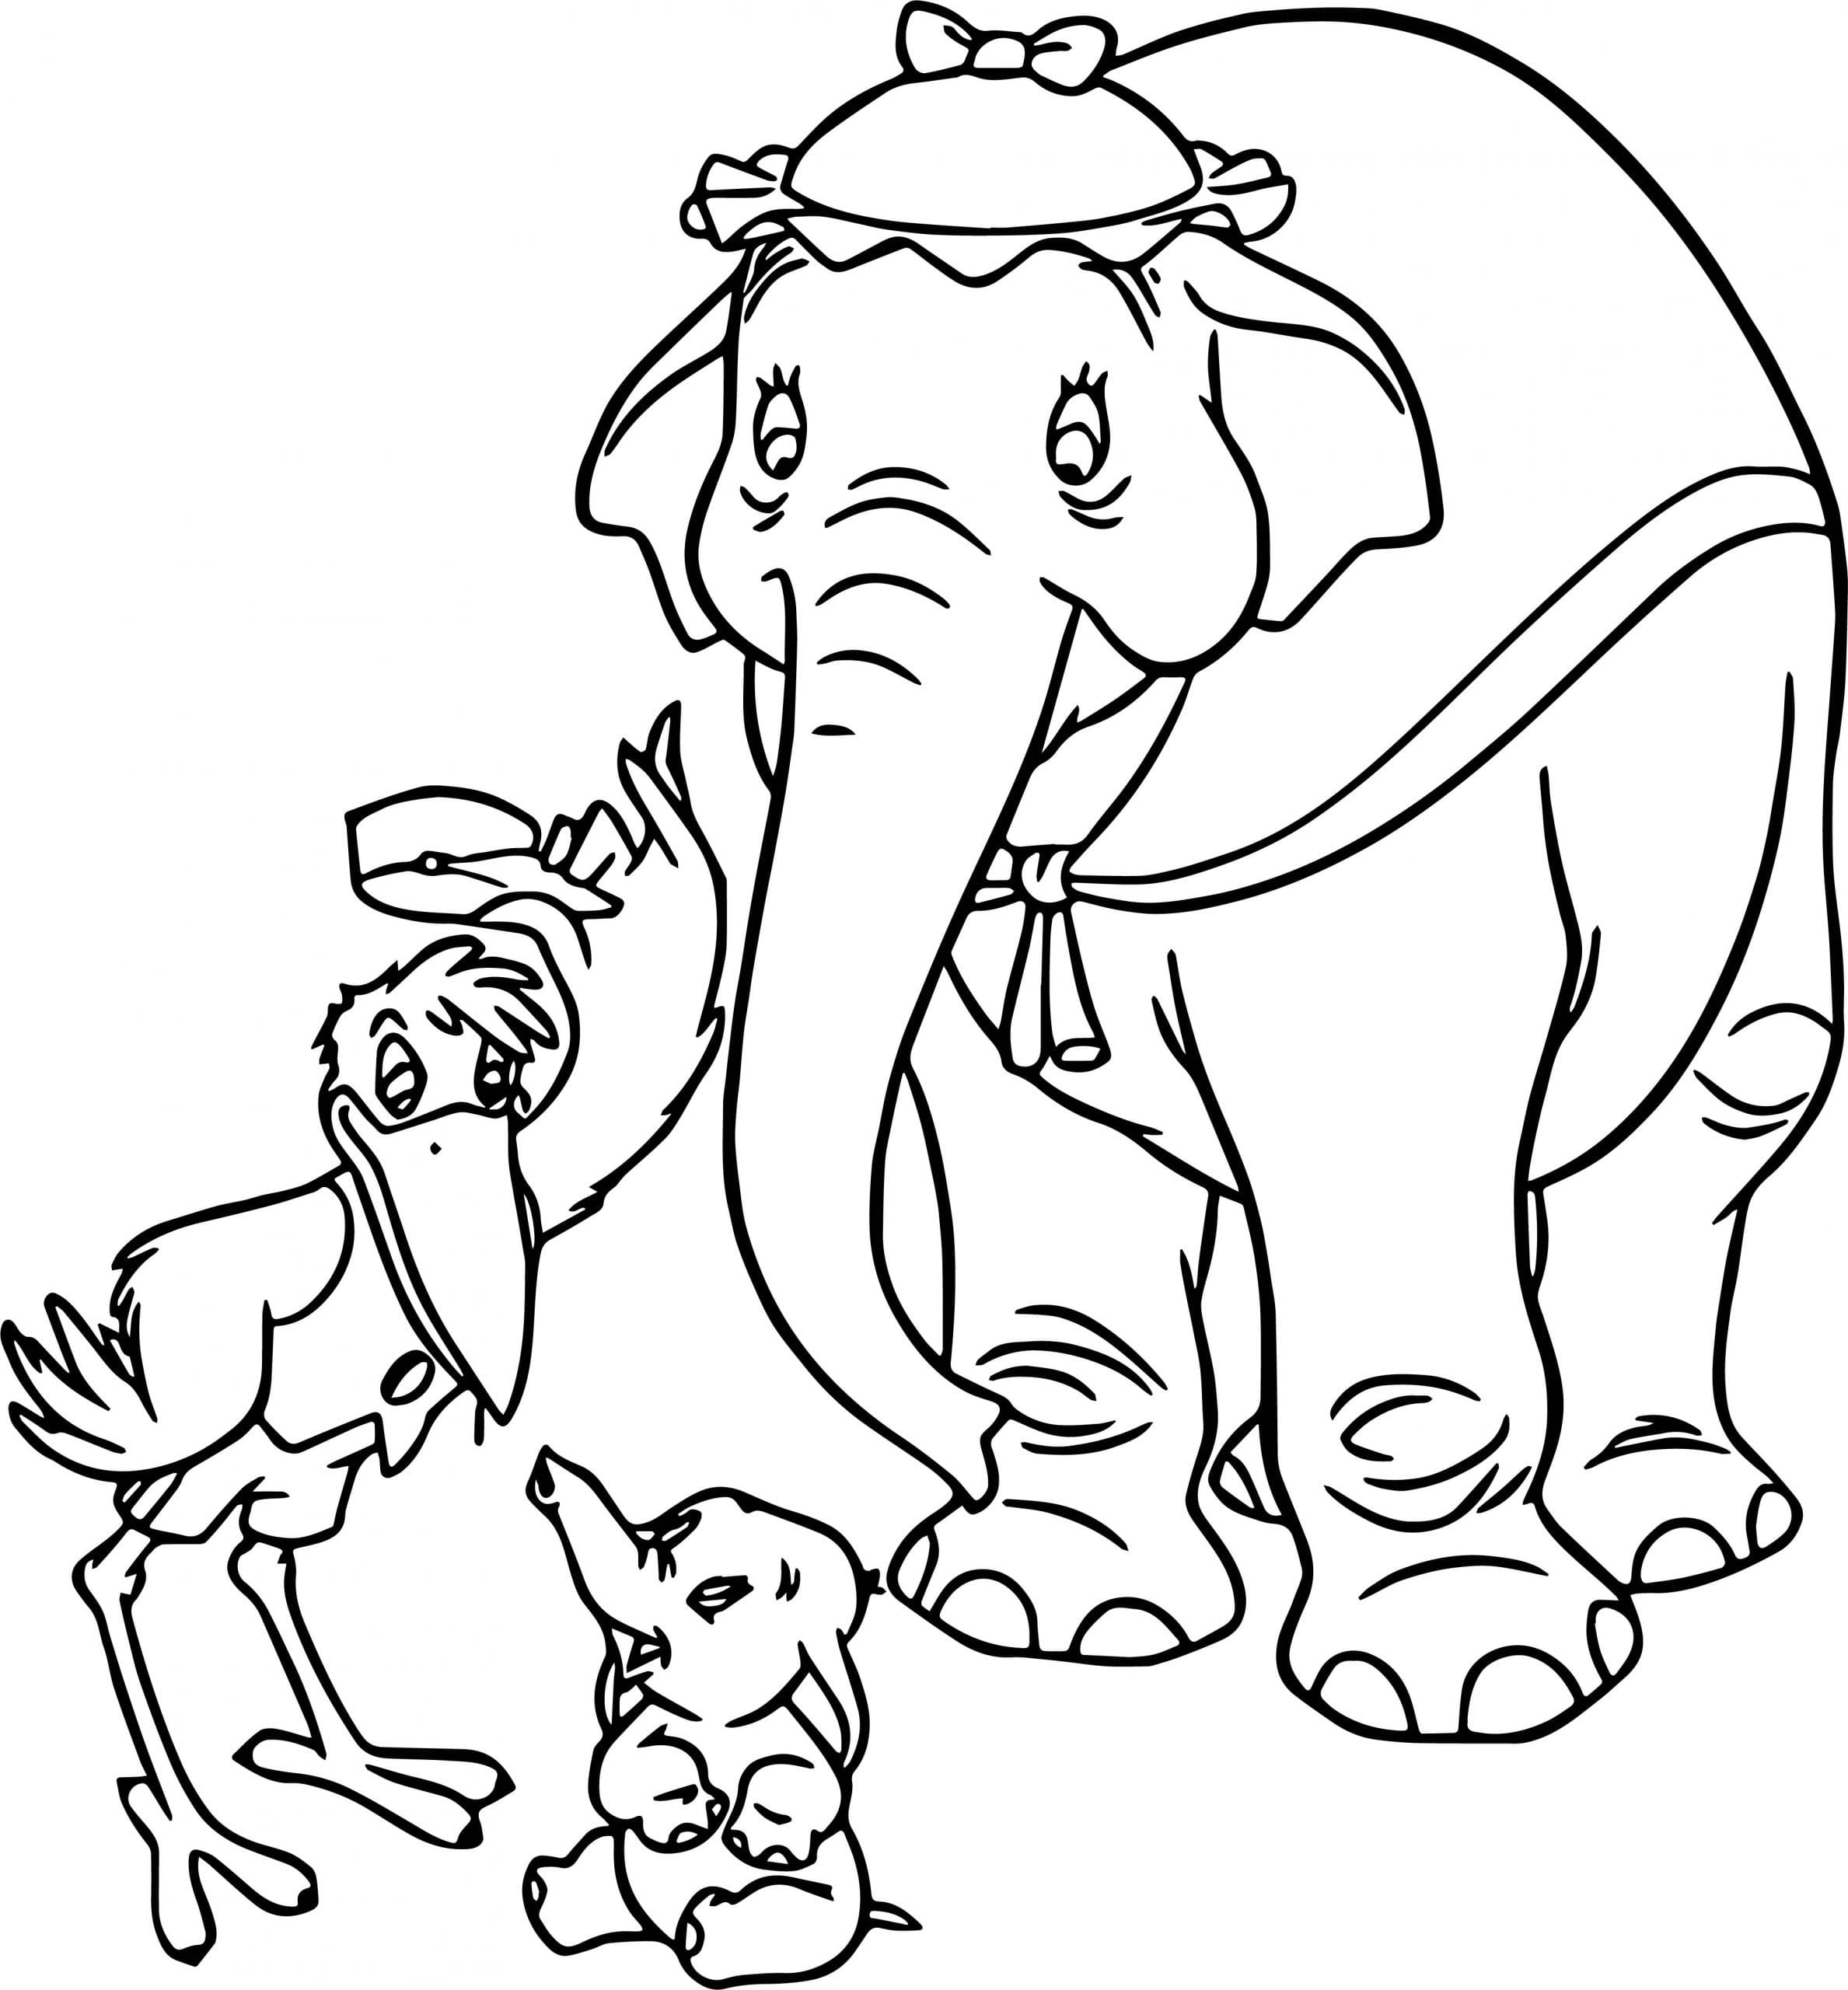 Dibujos de Dumbo para colorear - 70 imágenes para imprimir gratis